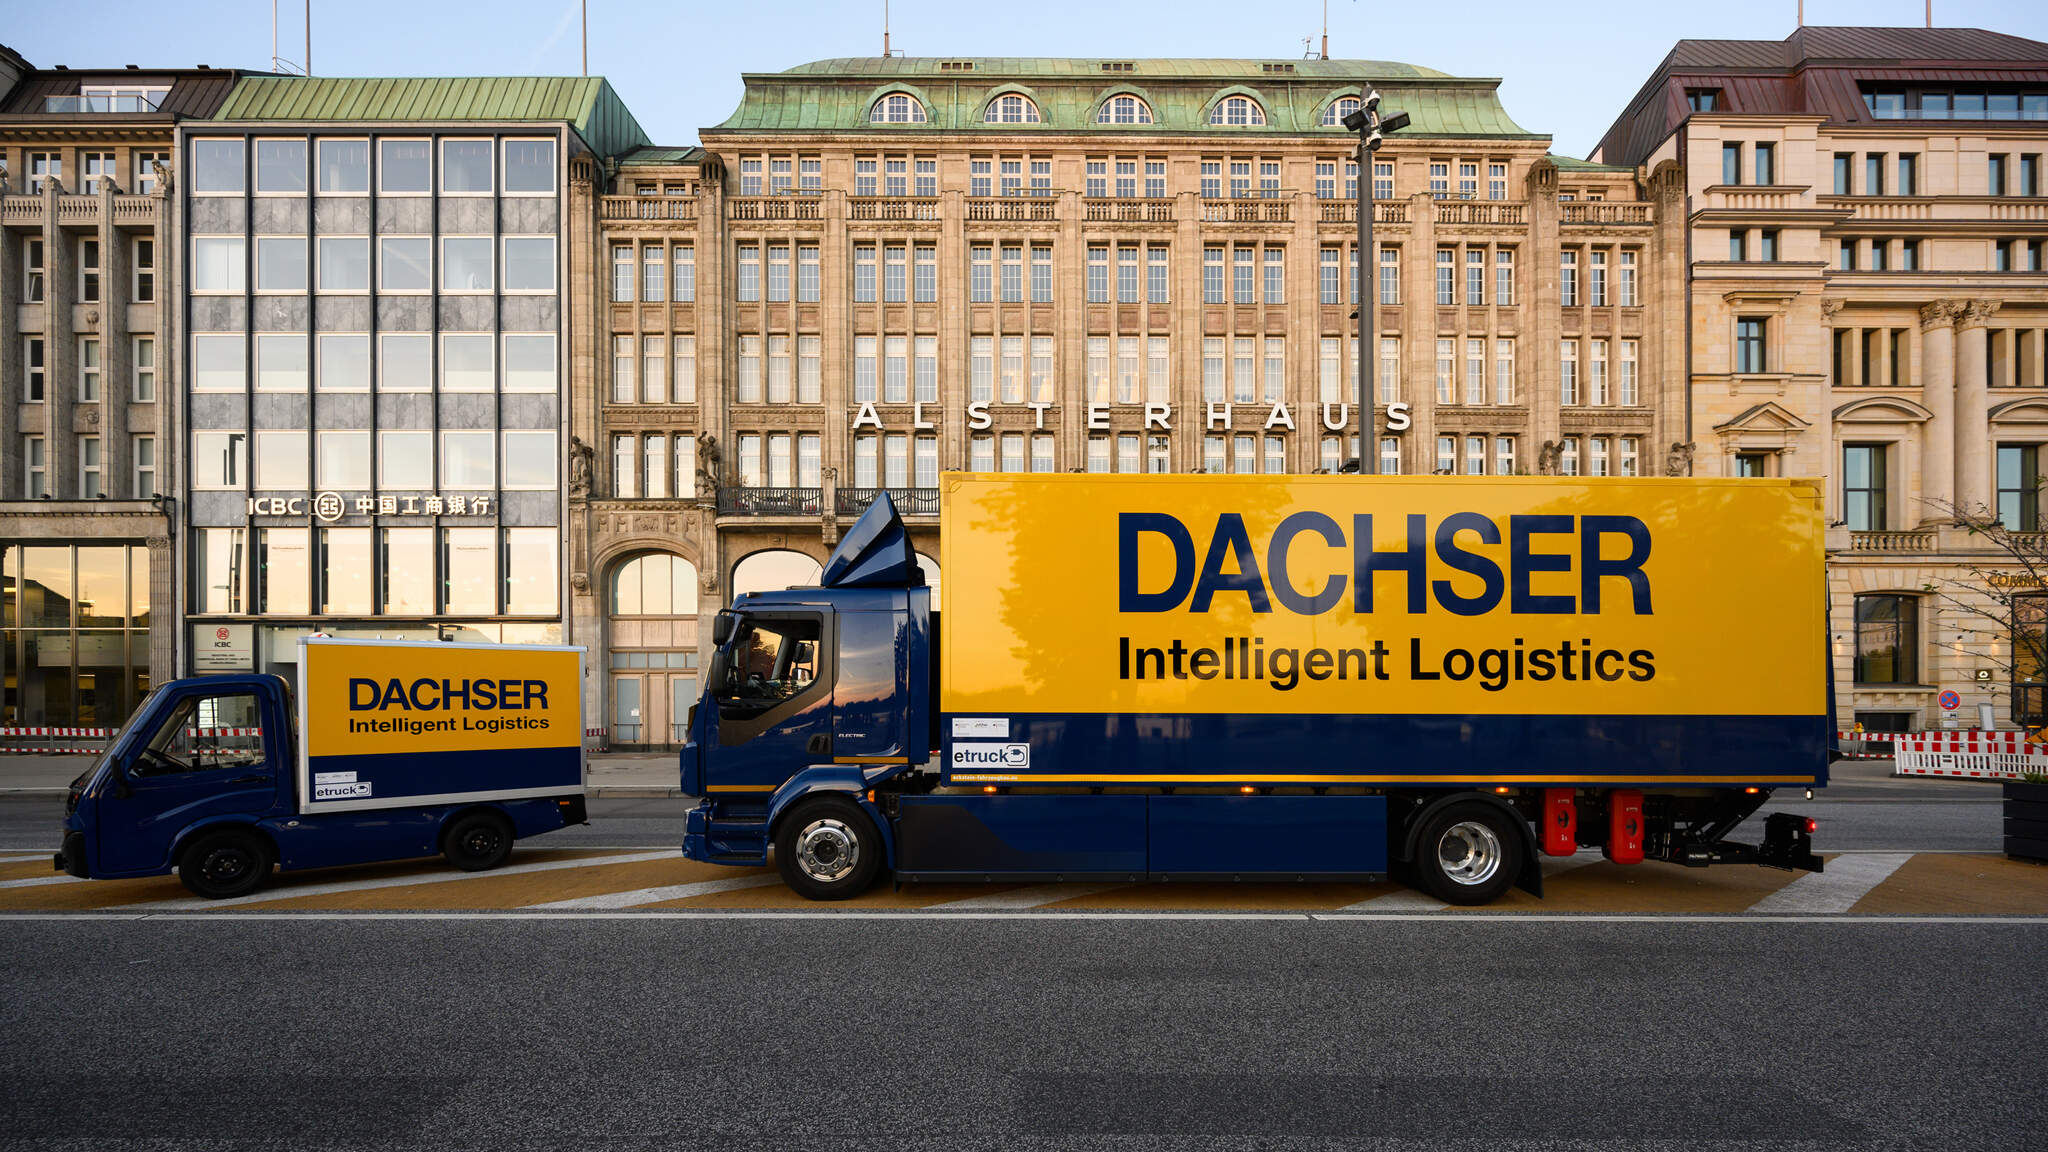 A DACHSER Emission-Free Delivery utiliza vans e caminhões elétricos, bem como bicicletas de carga pesadas e eletricamente assistidas para cobrir a “última milha” em áreas centrais definidas